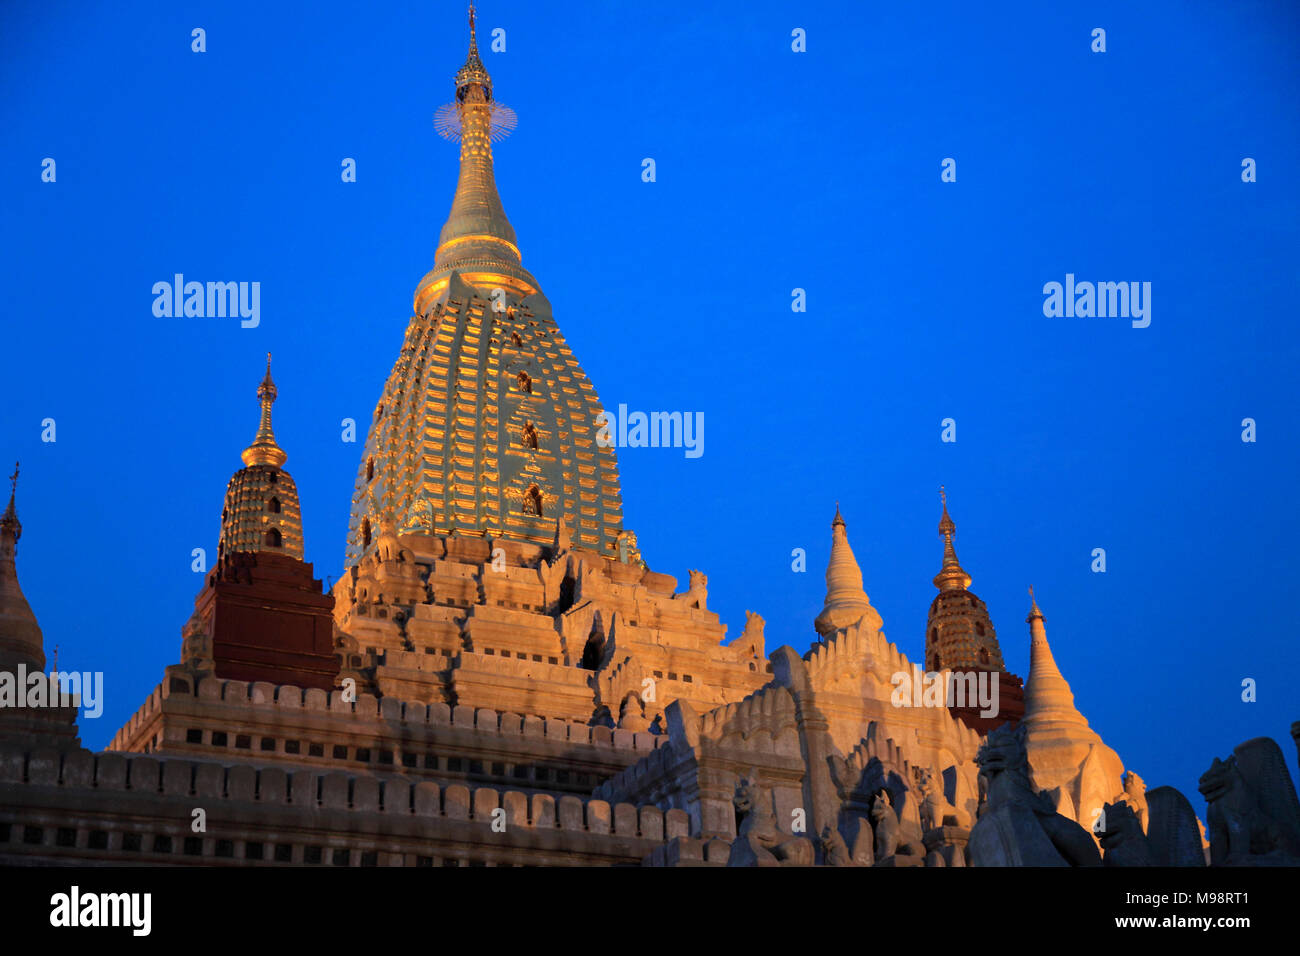 Myanmar Birmania, Bagan, Tempio di Ananda, notte, illuminato, Foto Stock